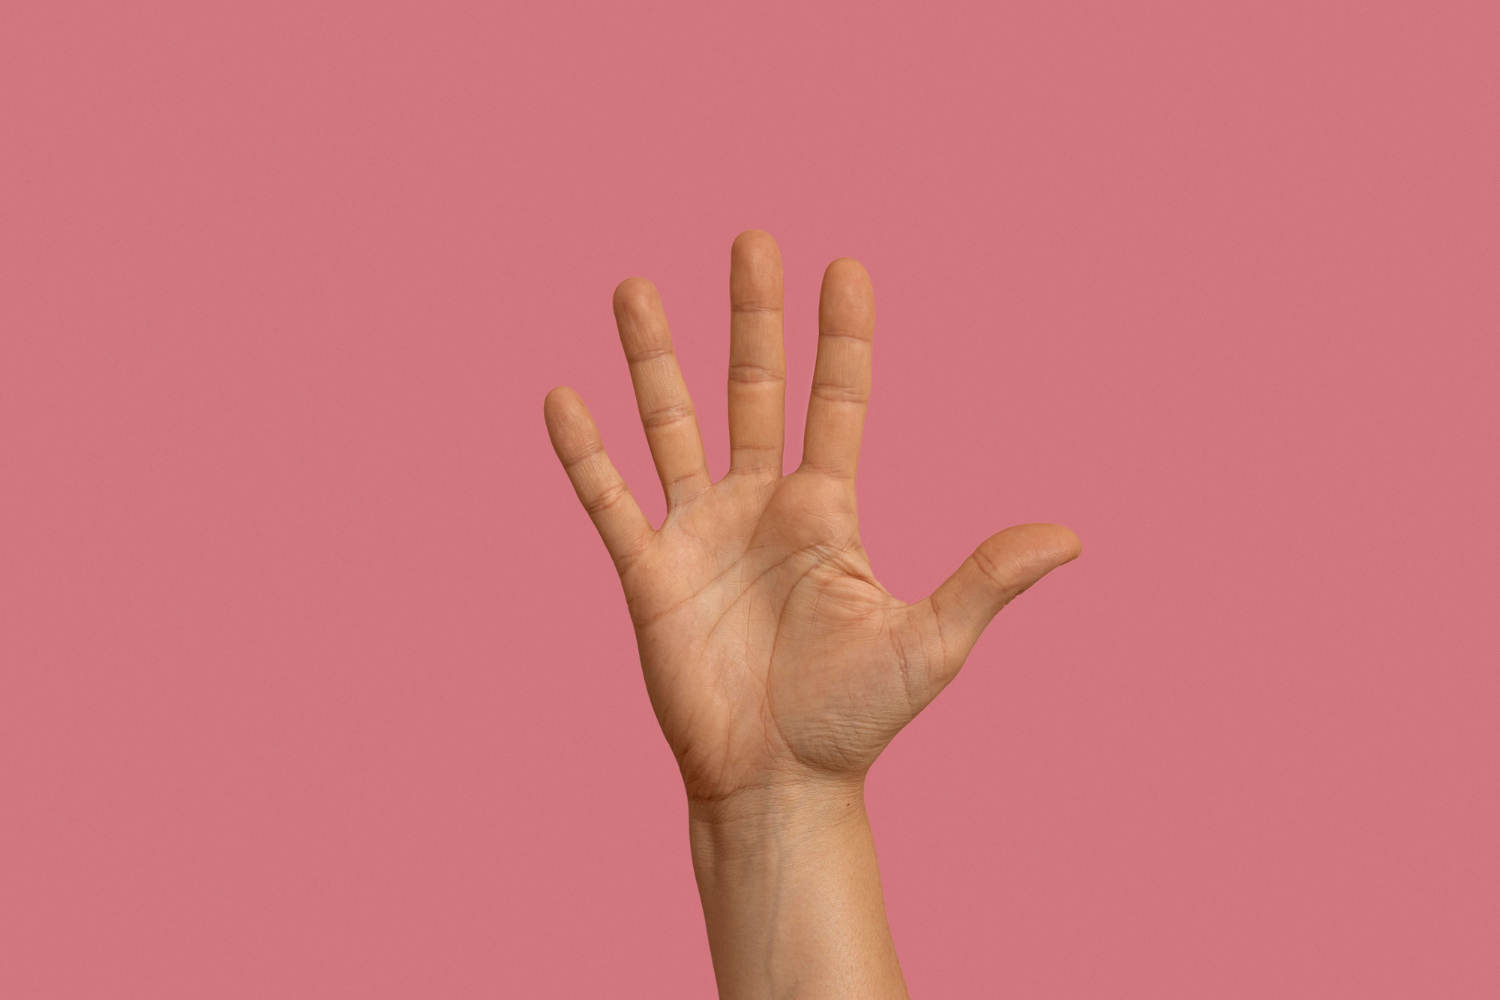 Los dedos pueden revelar signos de enfermedad mental